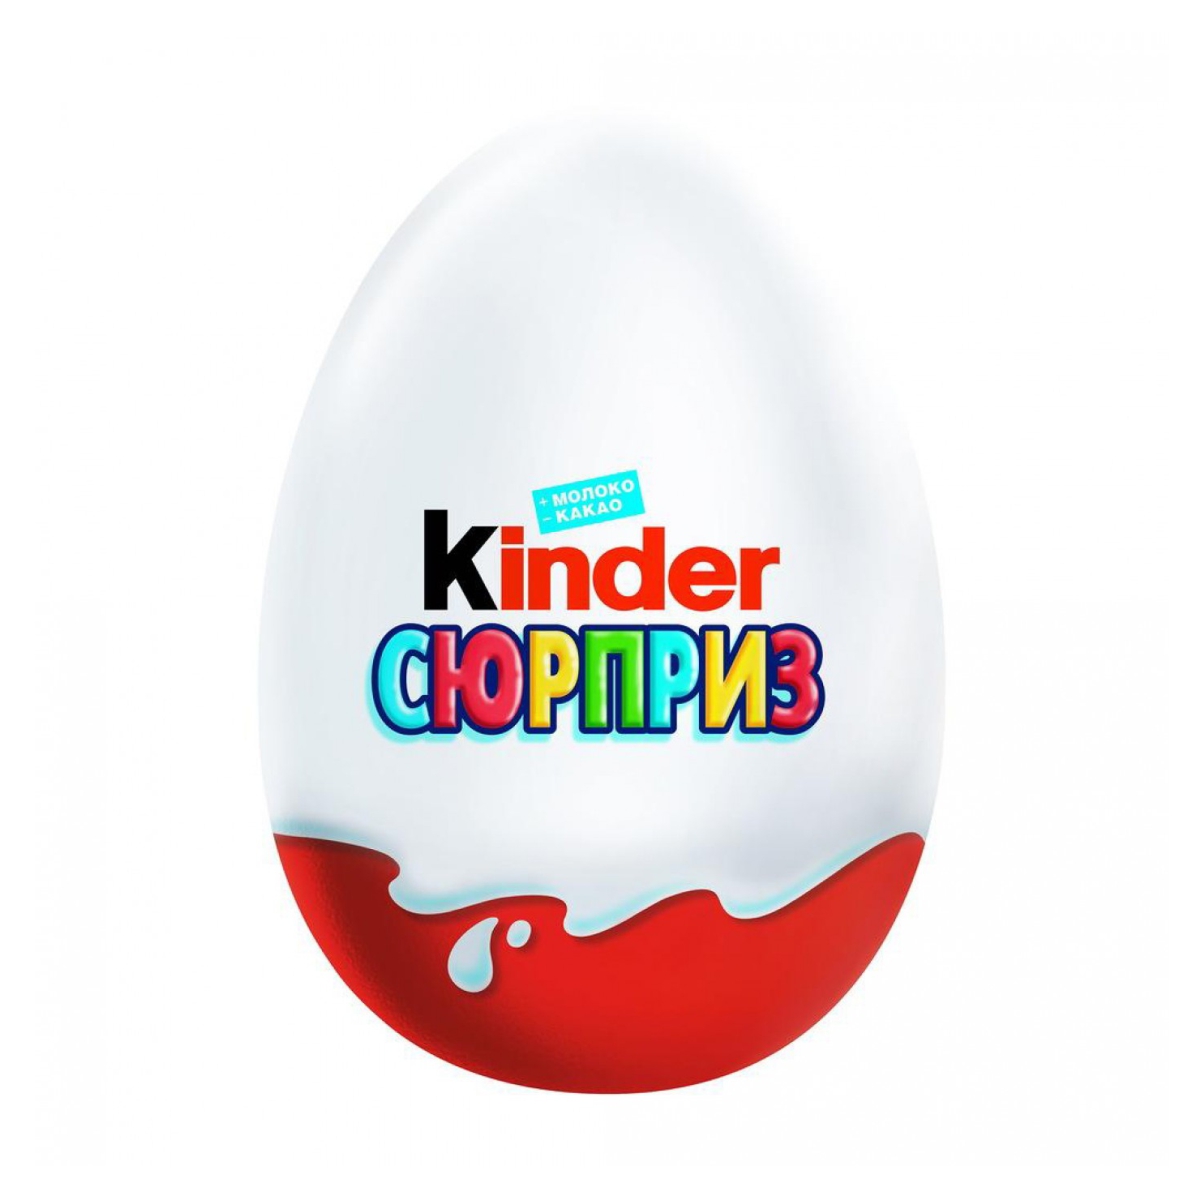 Киндер сюрприз без. Шоколадное яйцо kinder "Киндер-сюрприз", 20 г. Киндер сюрприз яйцо шлколад. Яйцо ШОК. Киндер сюрприз 20г.